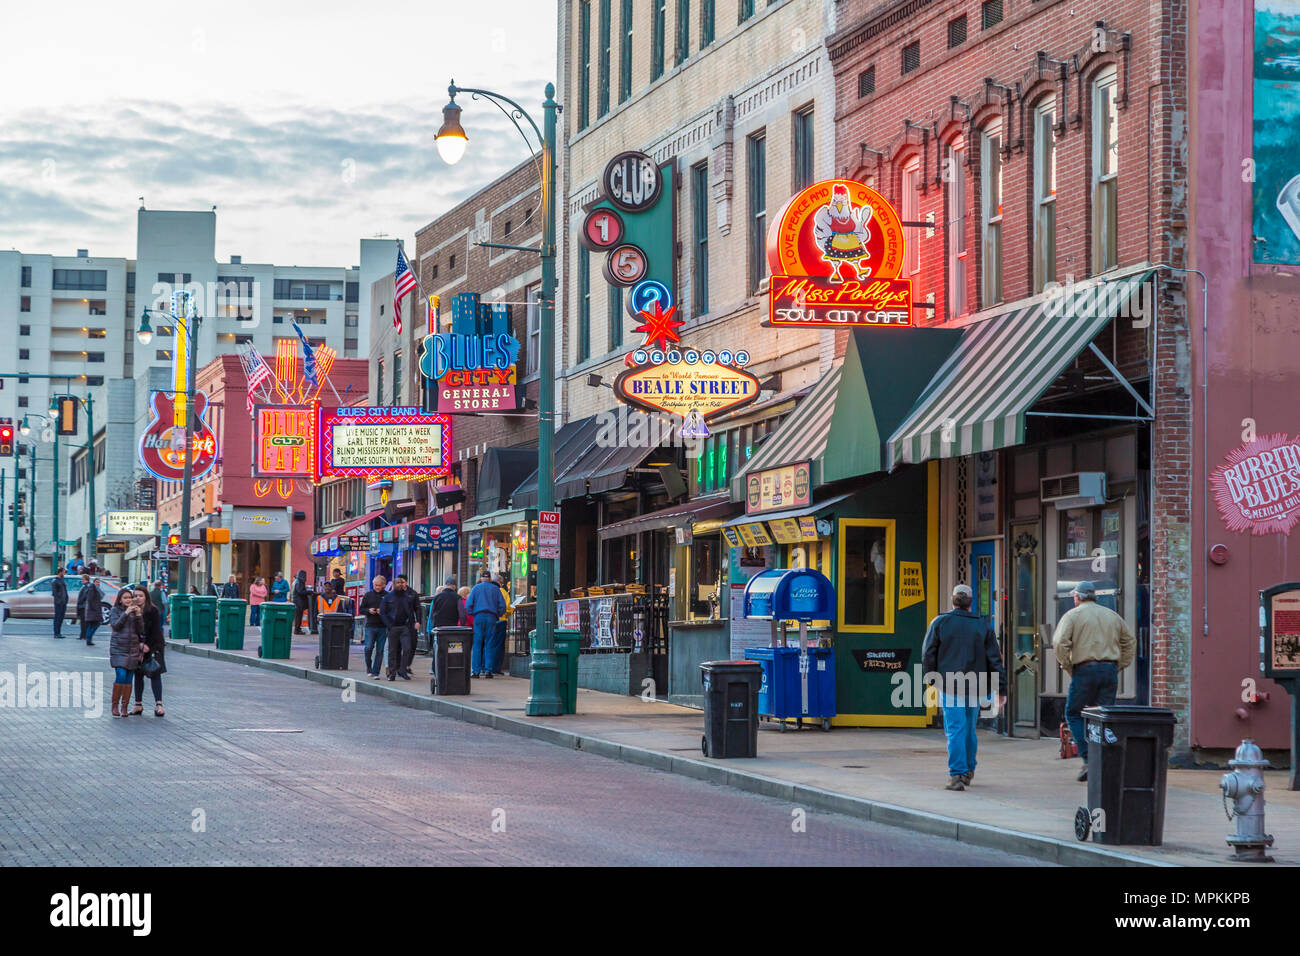 Historische Beale Street, bekannt als die Heimat der Blues in Memphis, Tennessee, USA Stockfoto